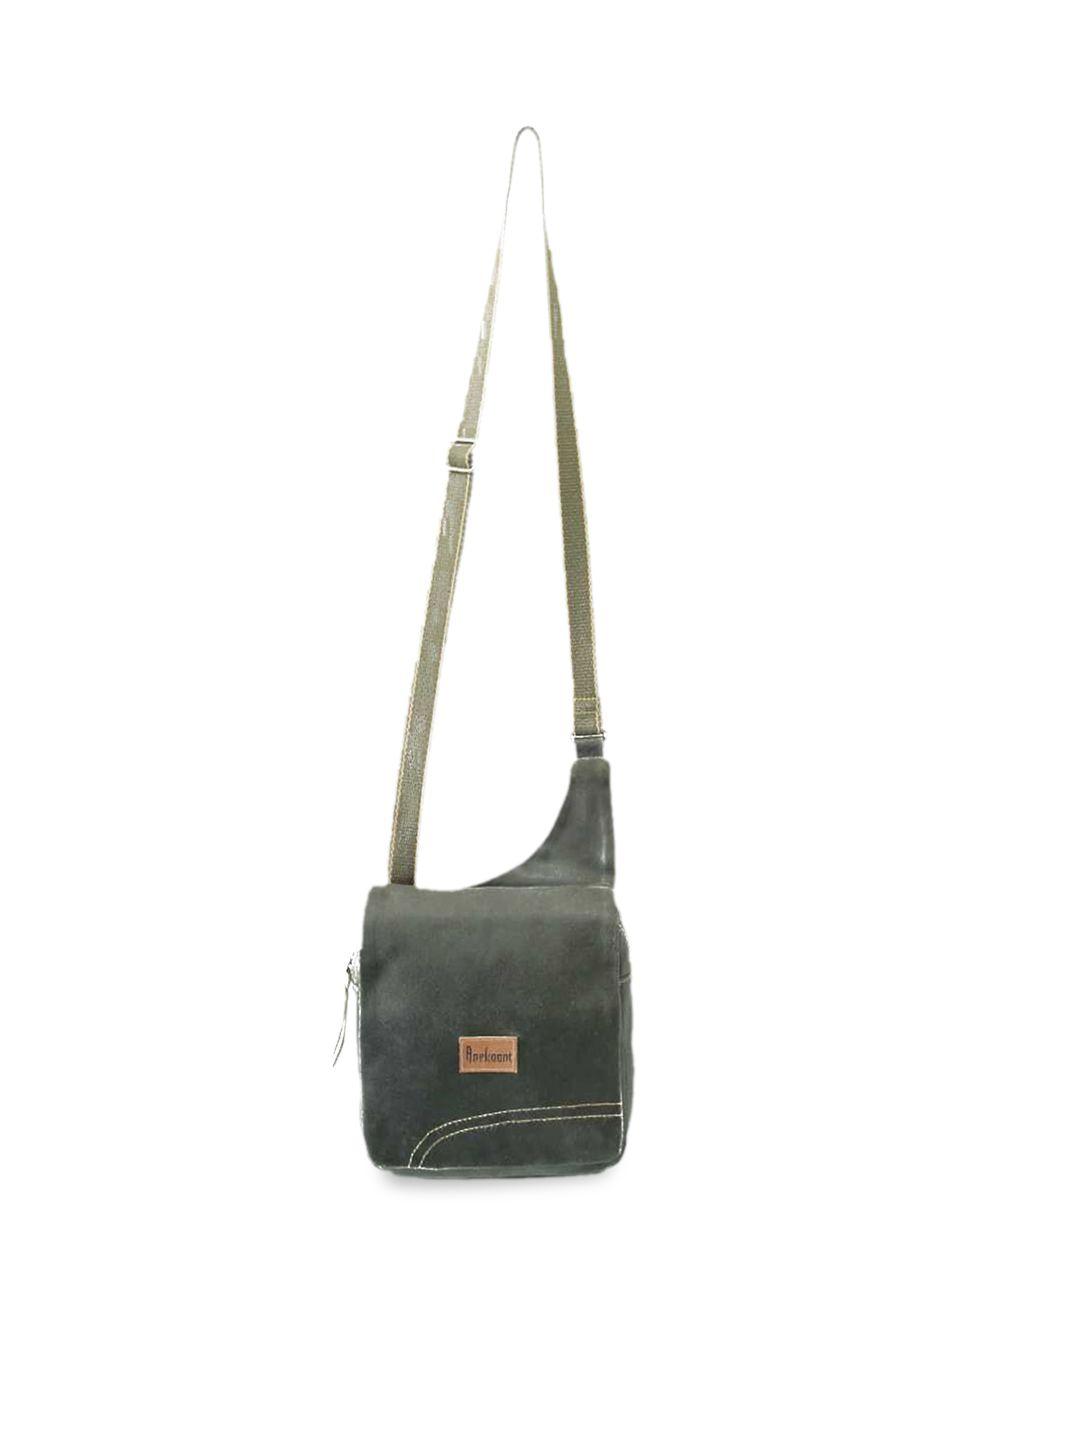 anekaant khaki leather shopper sling bag